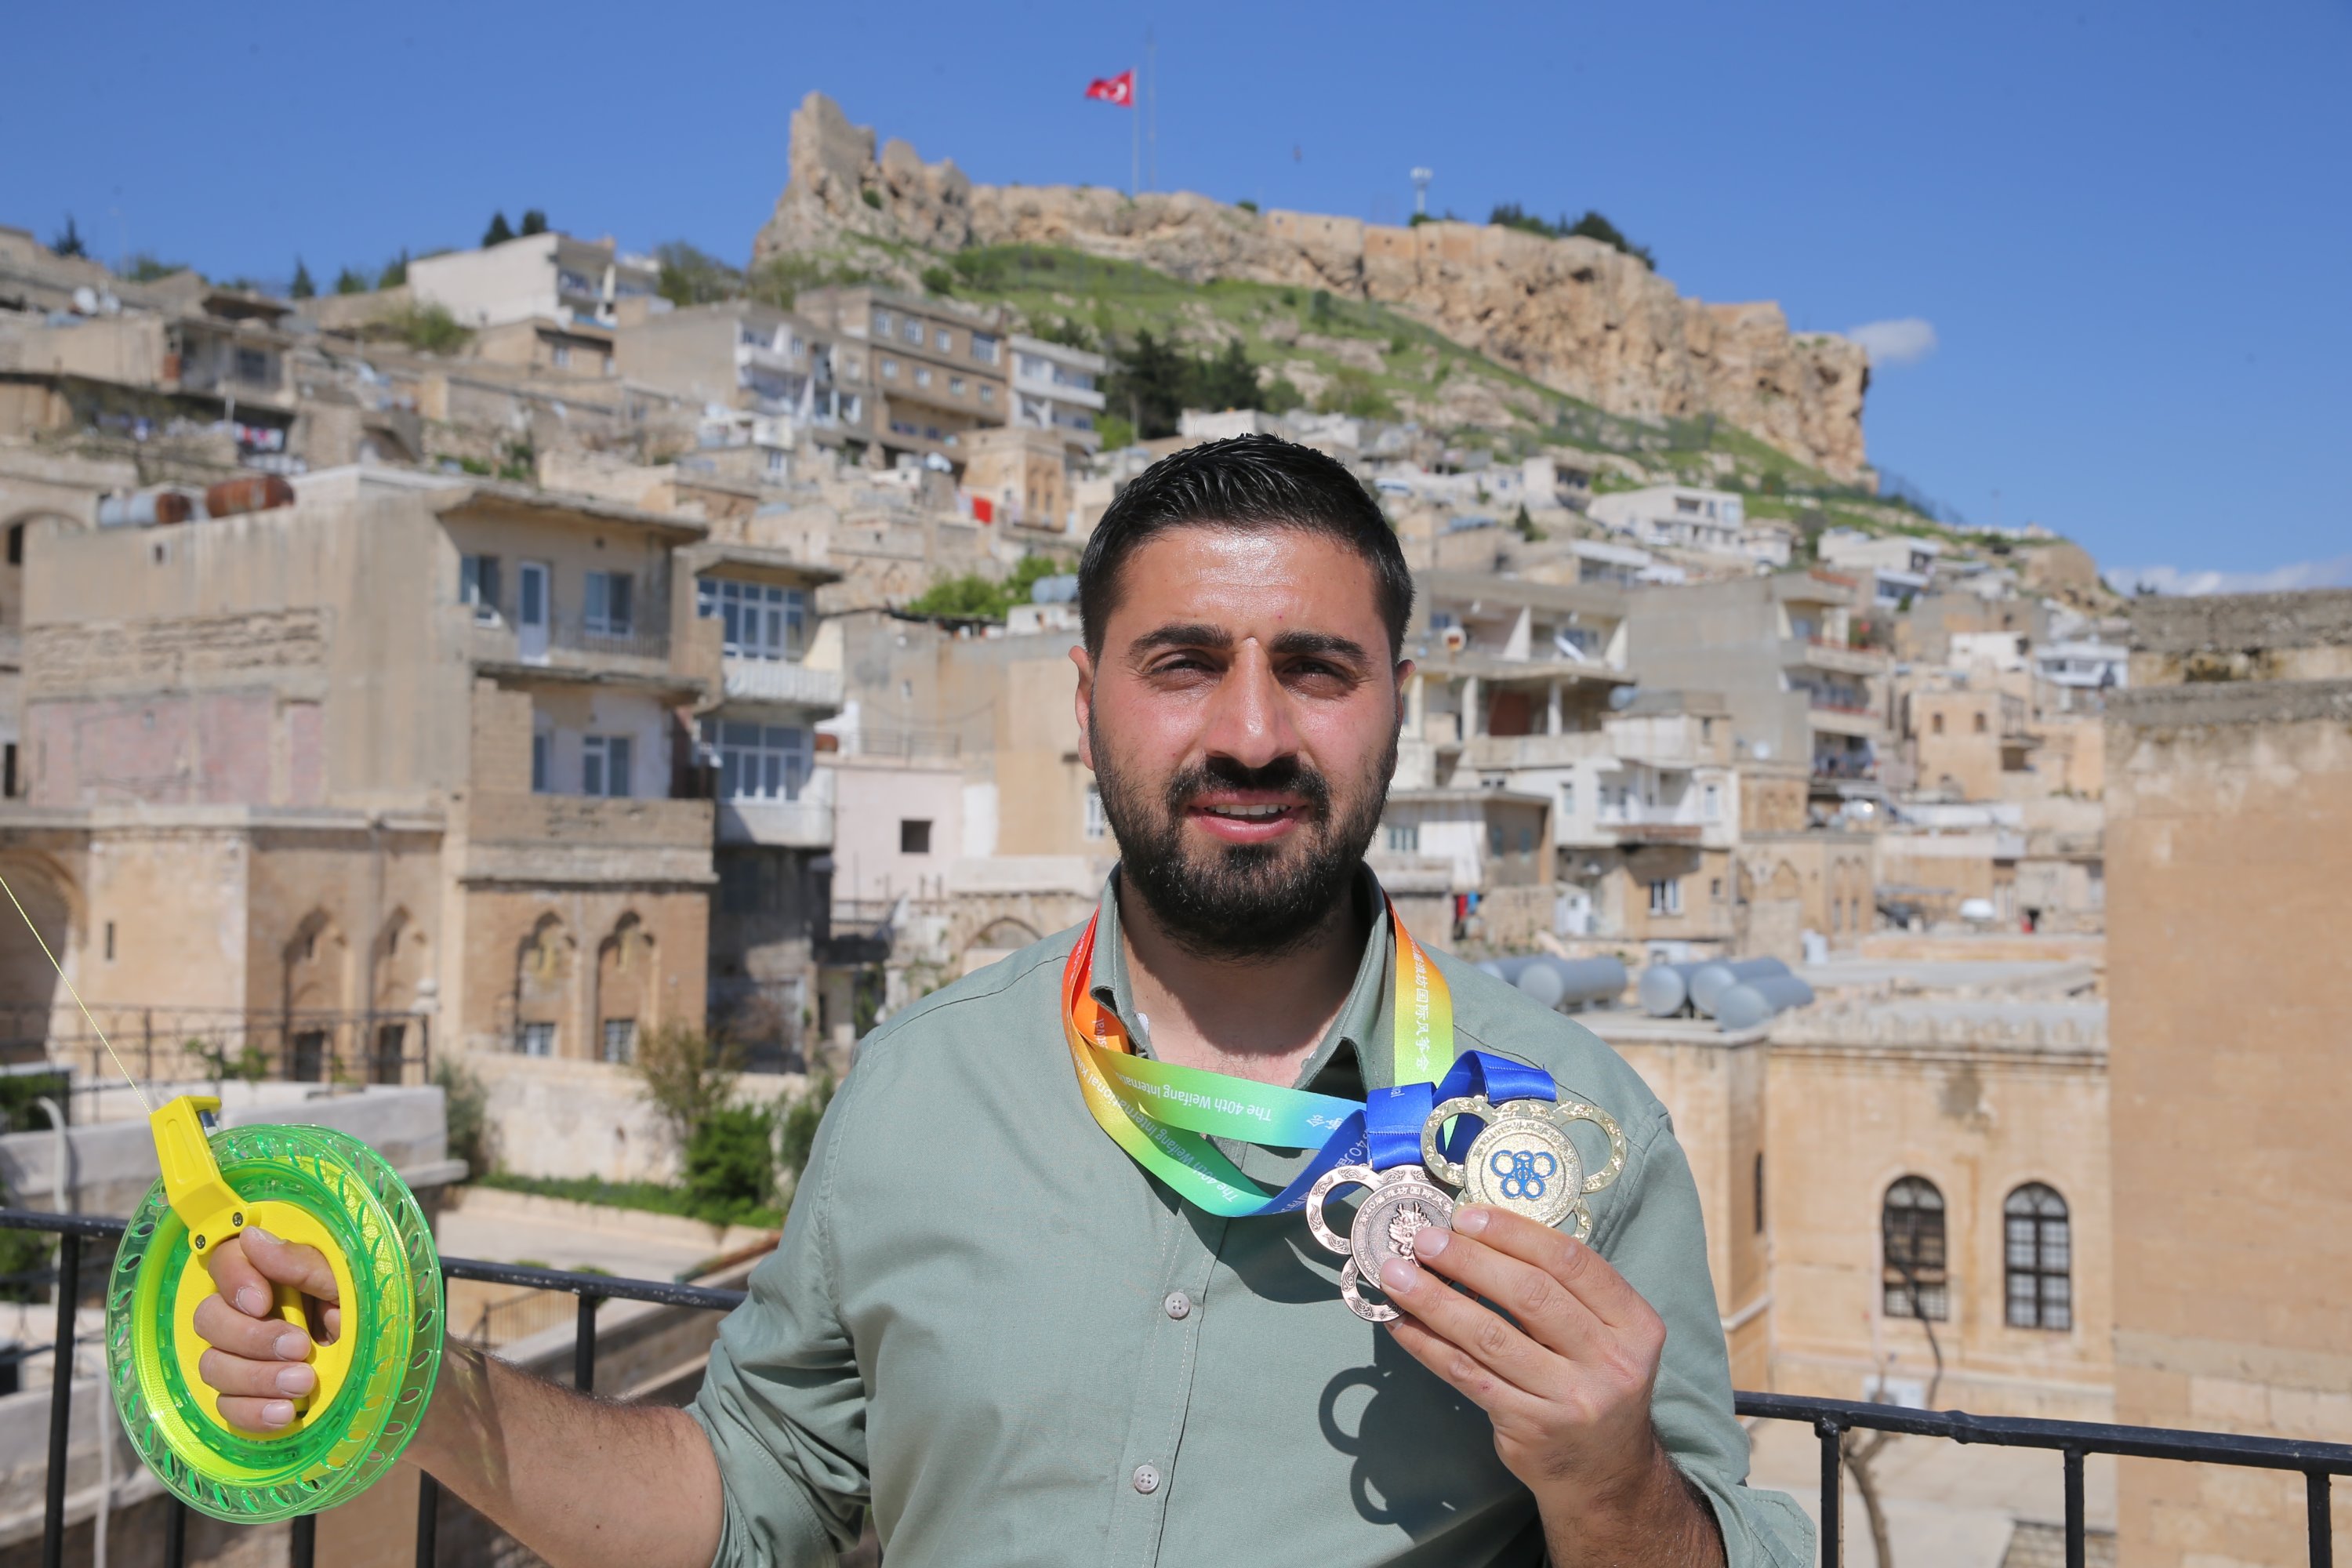 Seniman layang-layang Zahit Mungan dengan medali yang diraihnya pada kompetisi layang-layang internasional, Mardin, Türkiye, 27 April 2023. (Foto AA)